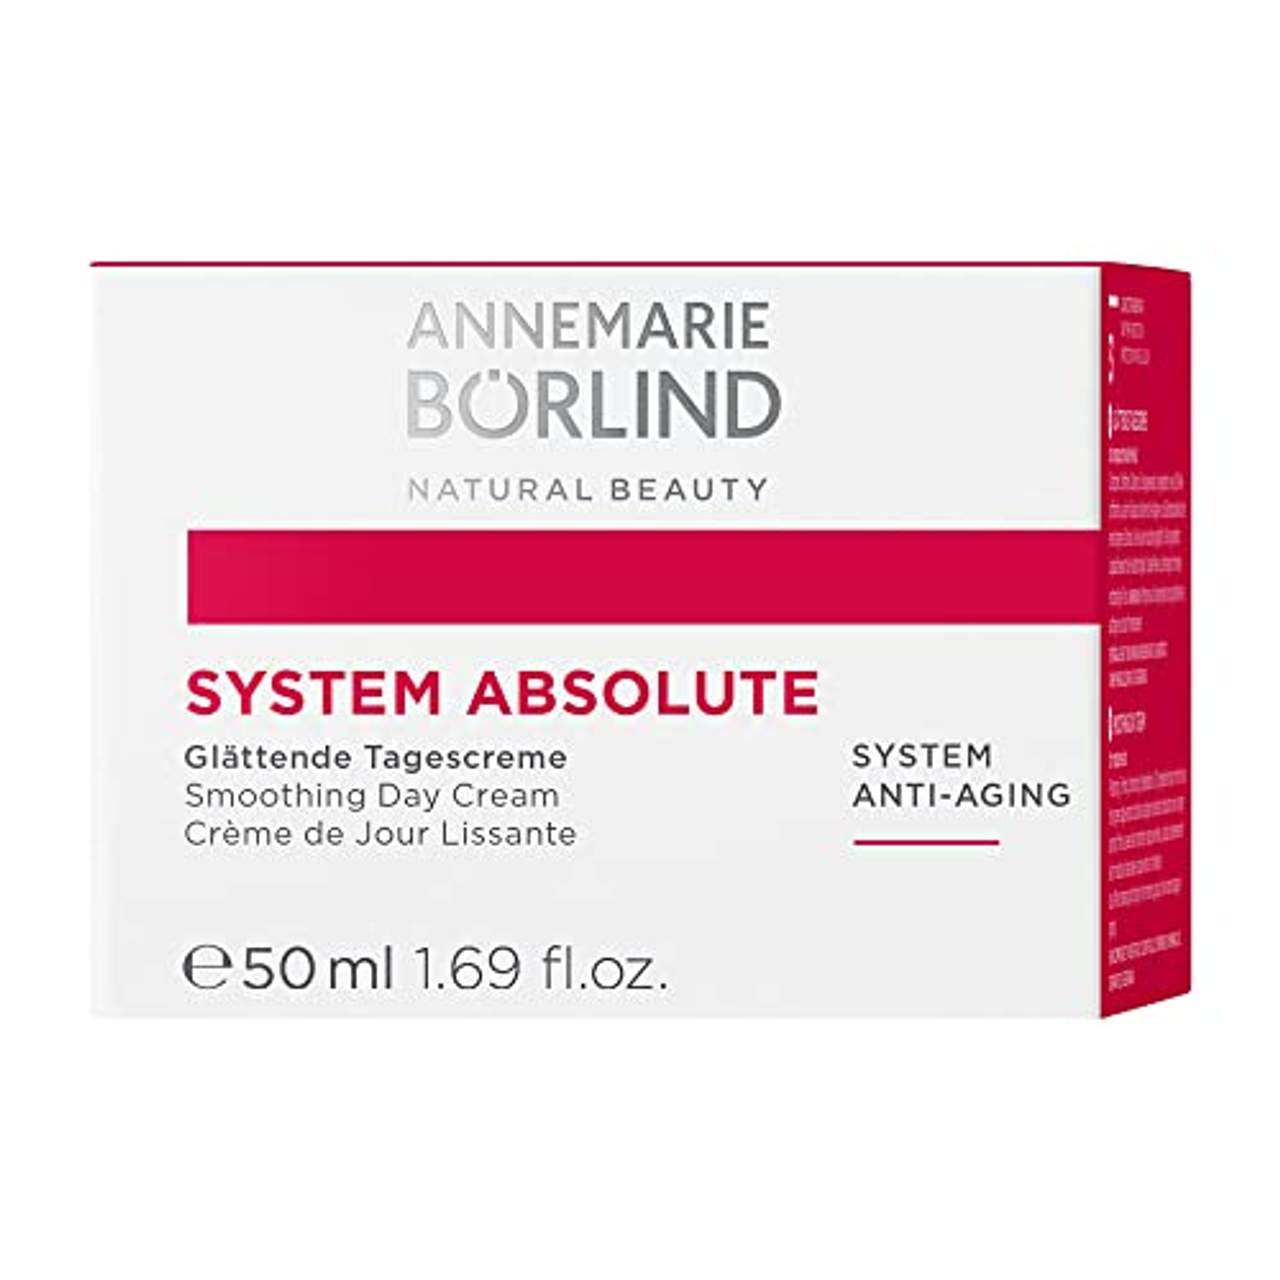 Annemarie Börlind System Absolute femme